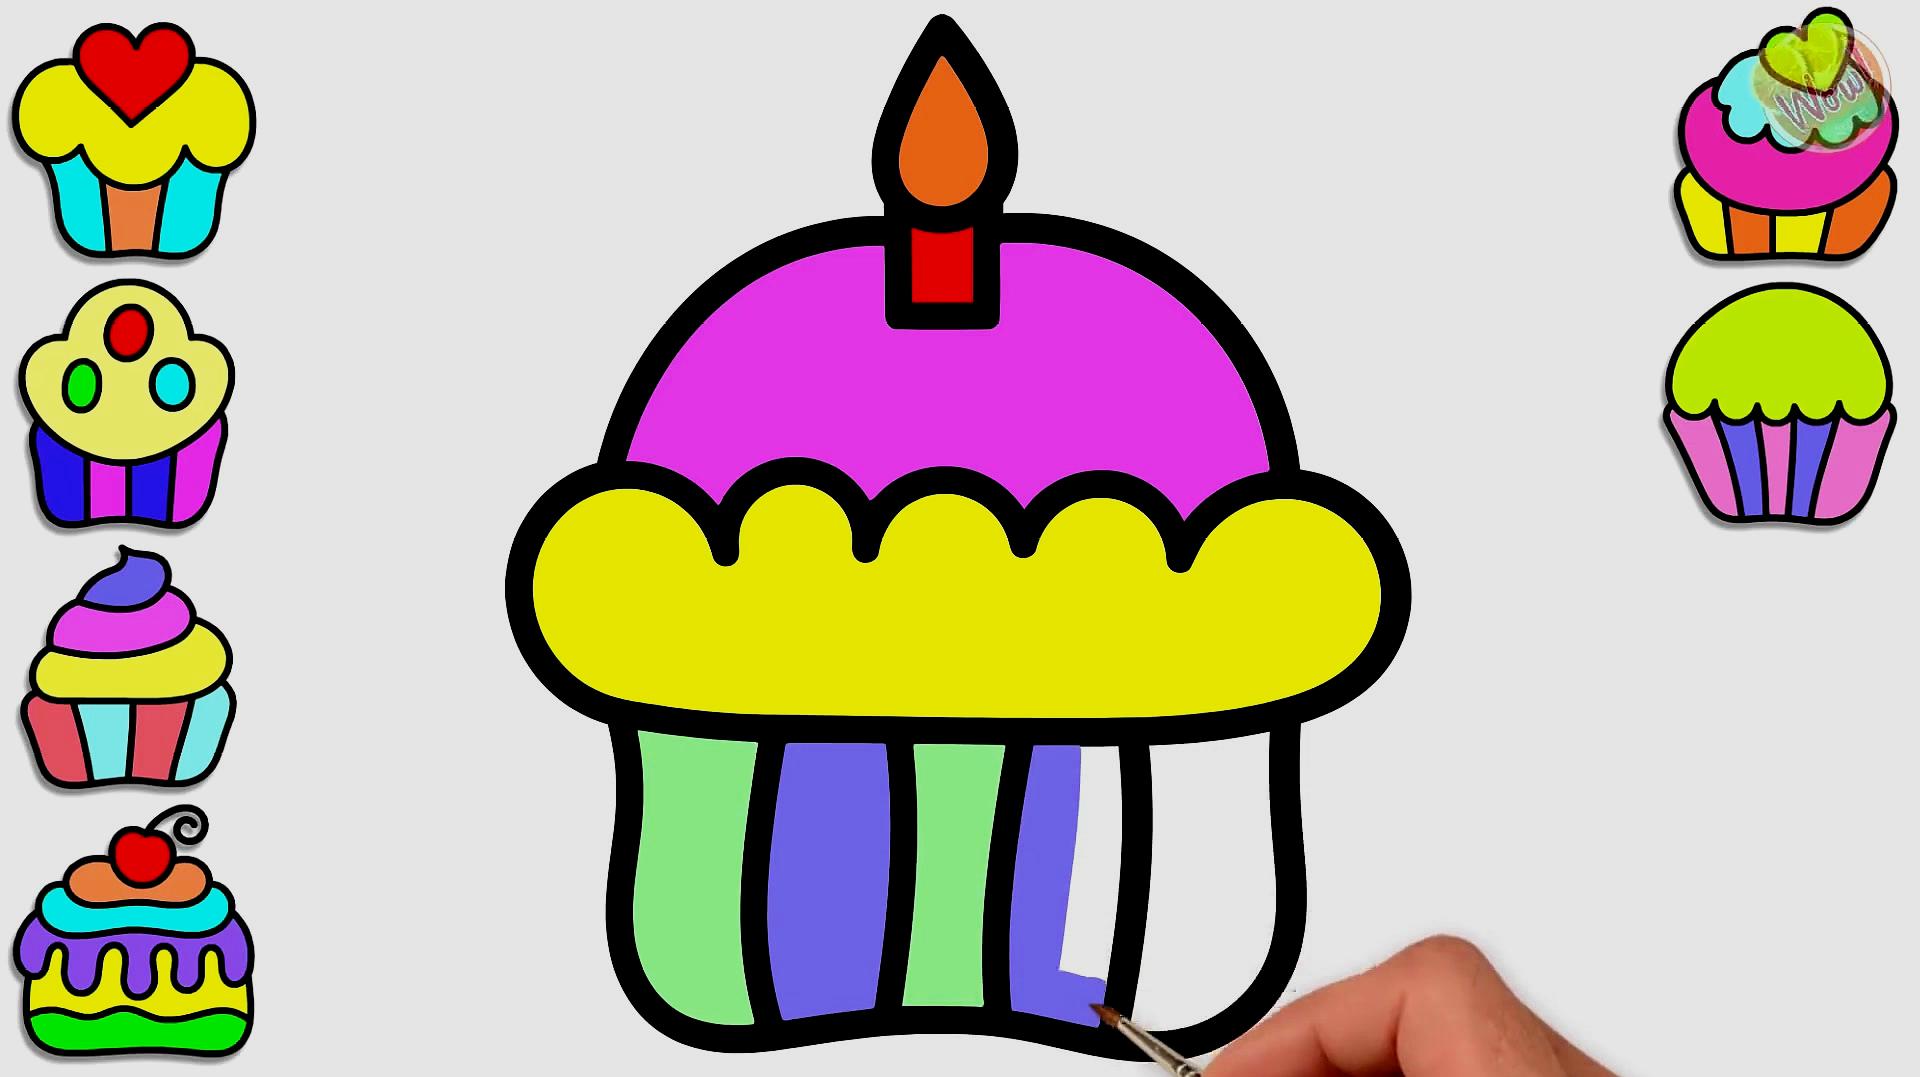 简笔画教你画不同款式的小蛋糕,一起跟着学习吧!